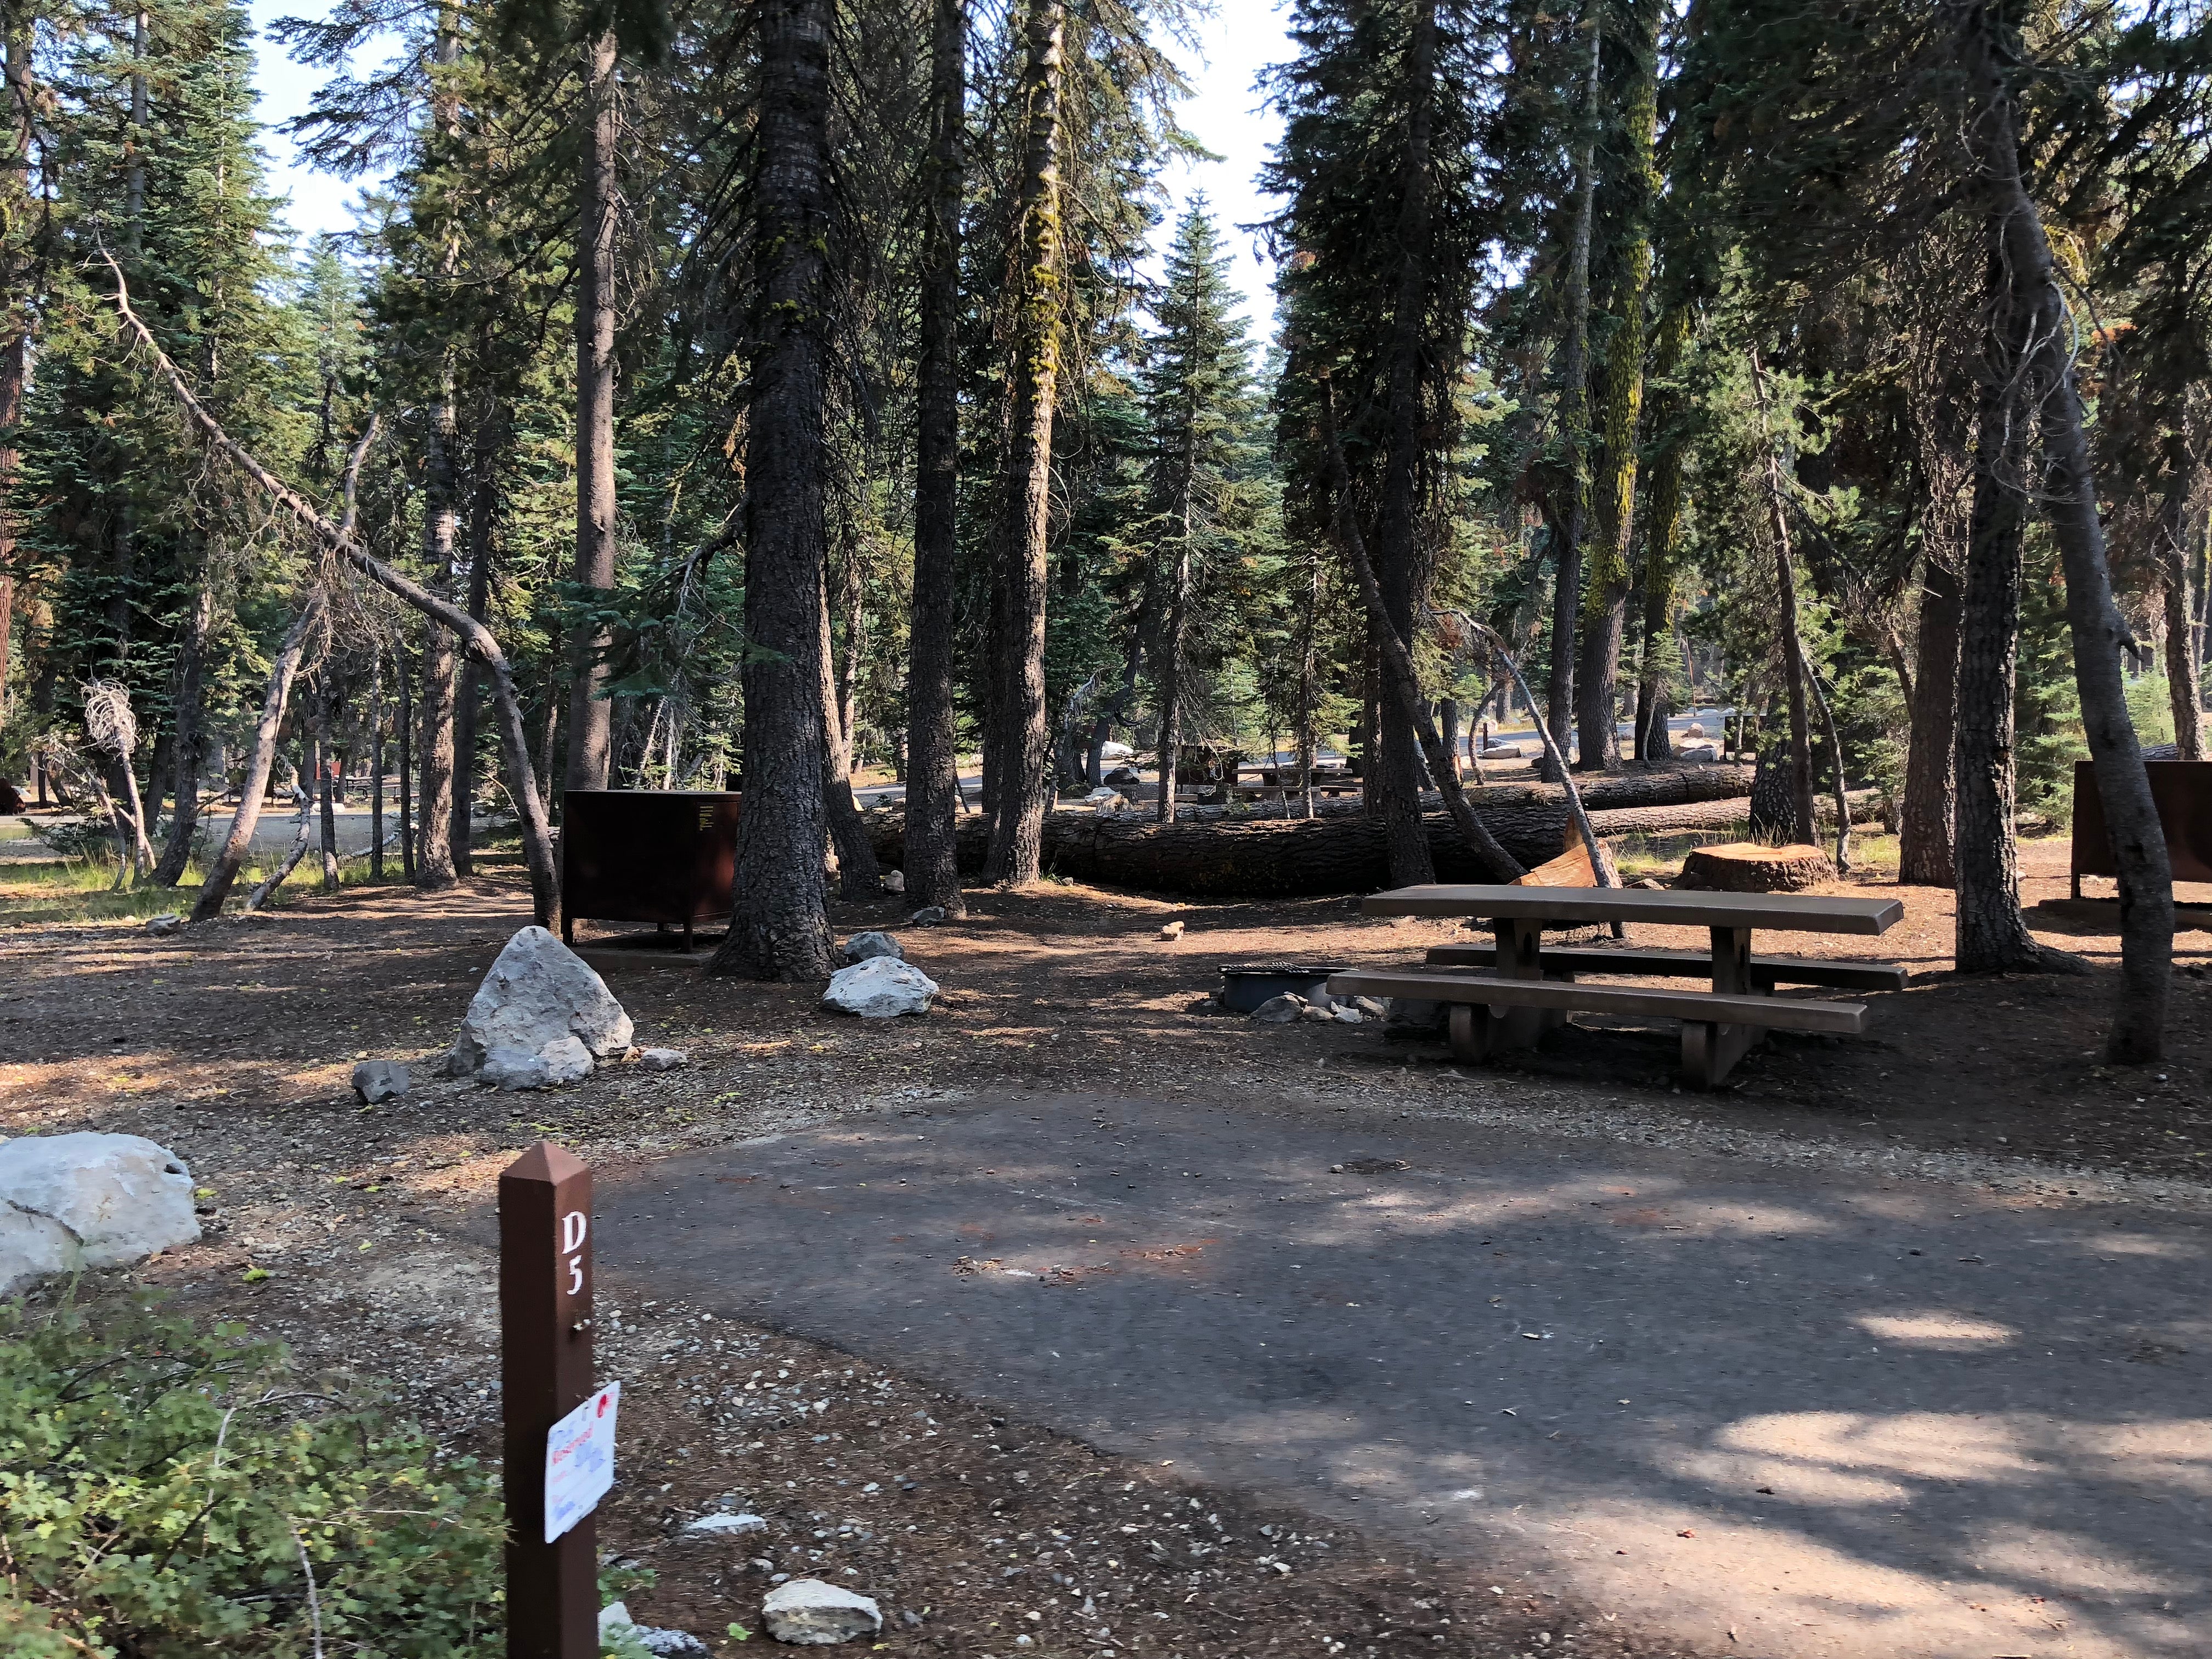 Empty campsites